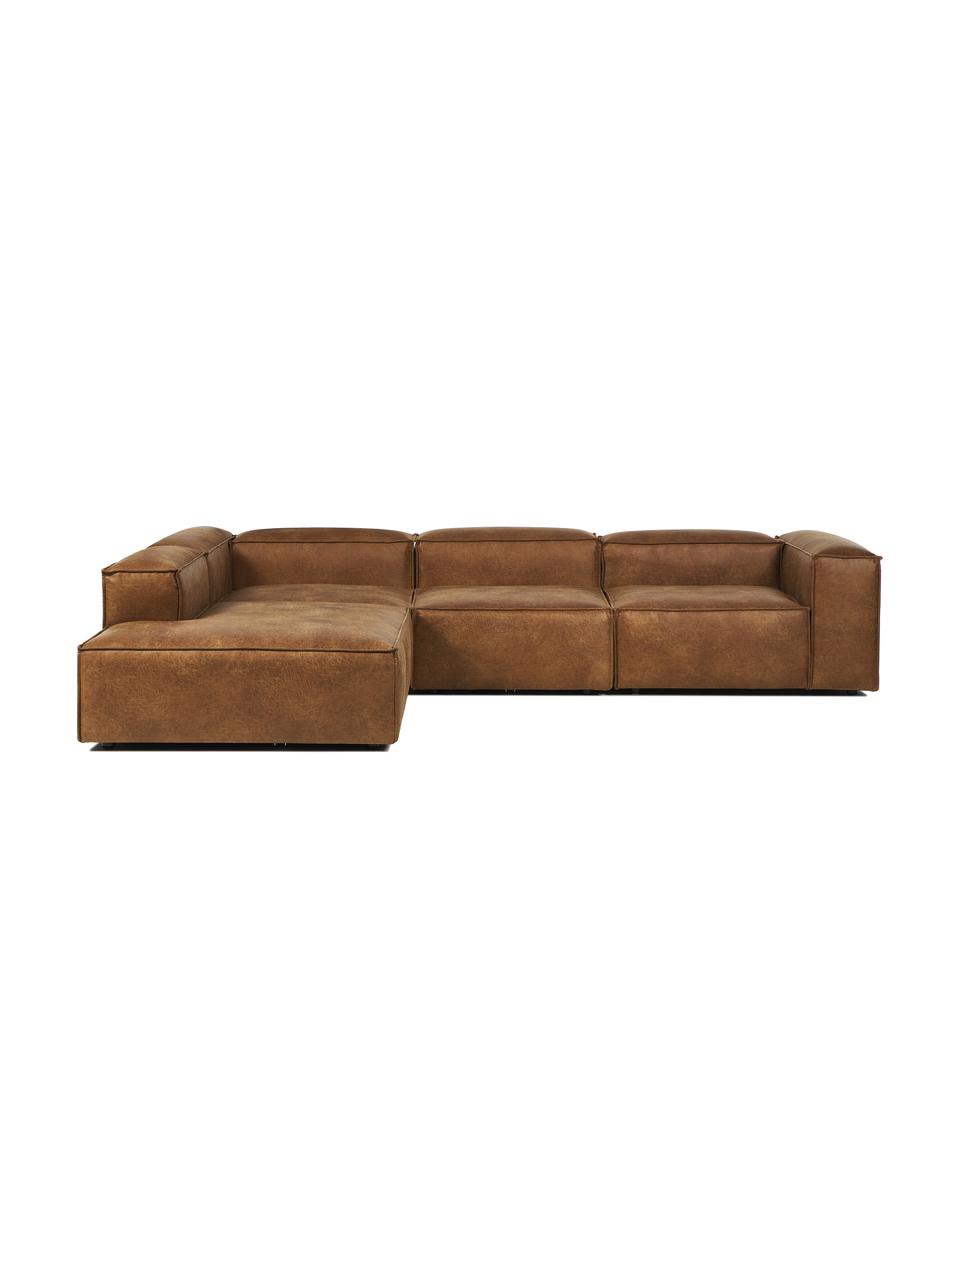 Sofa modułowa ze skóry z recyklingu Lennon, Tapicerka: skóra z recyklingu (70% s, Stelaż: lite drewno, sklejka, Nogi: tworzywo sztuczne, Brązowa skóra, S 329 x W 68 cm, lewostronna